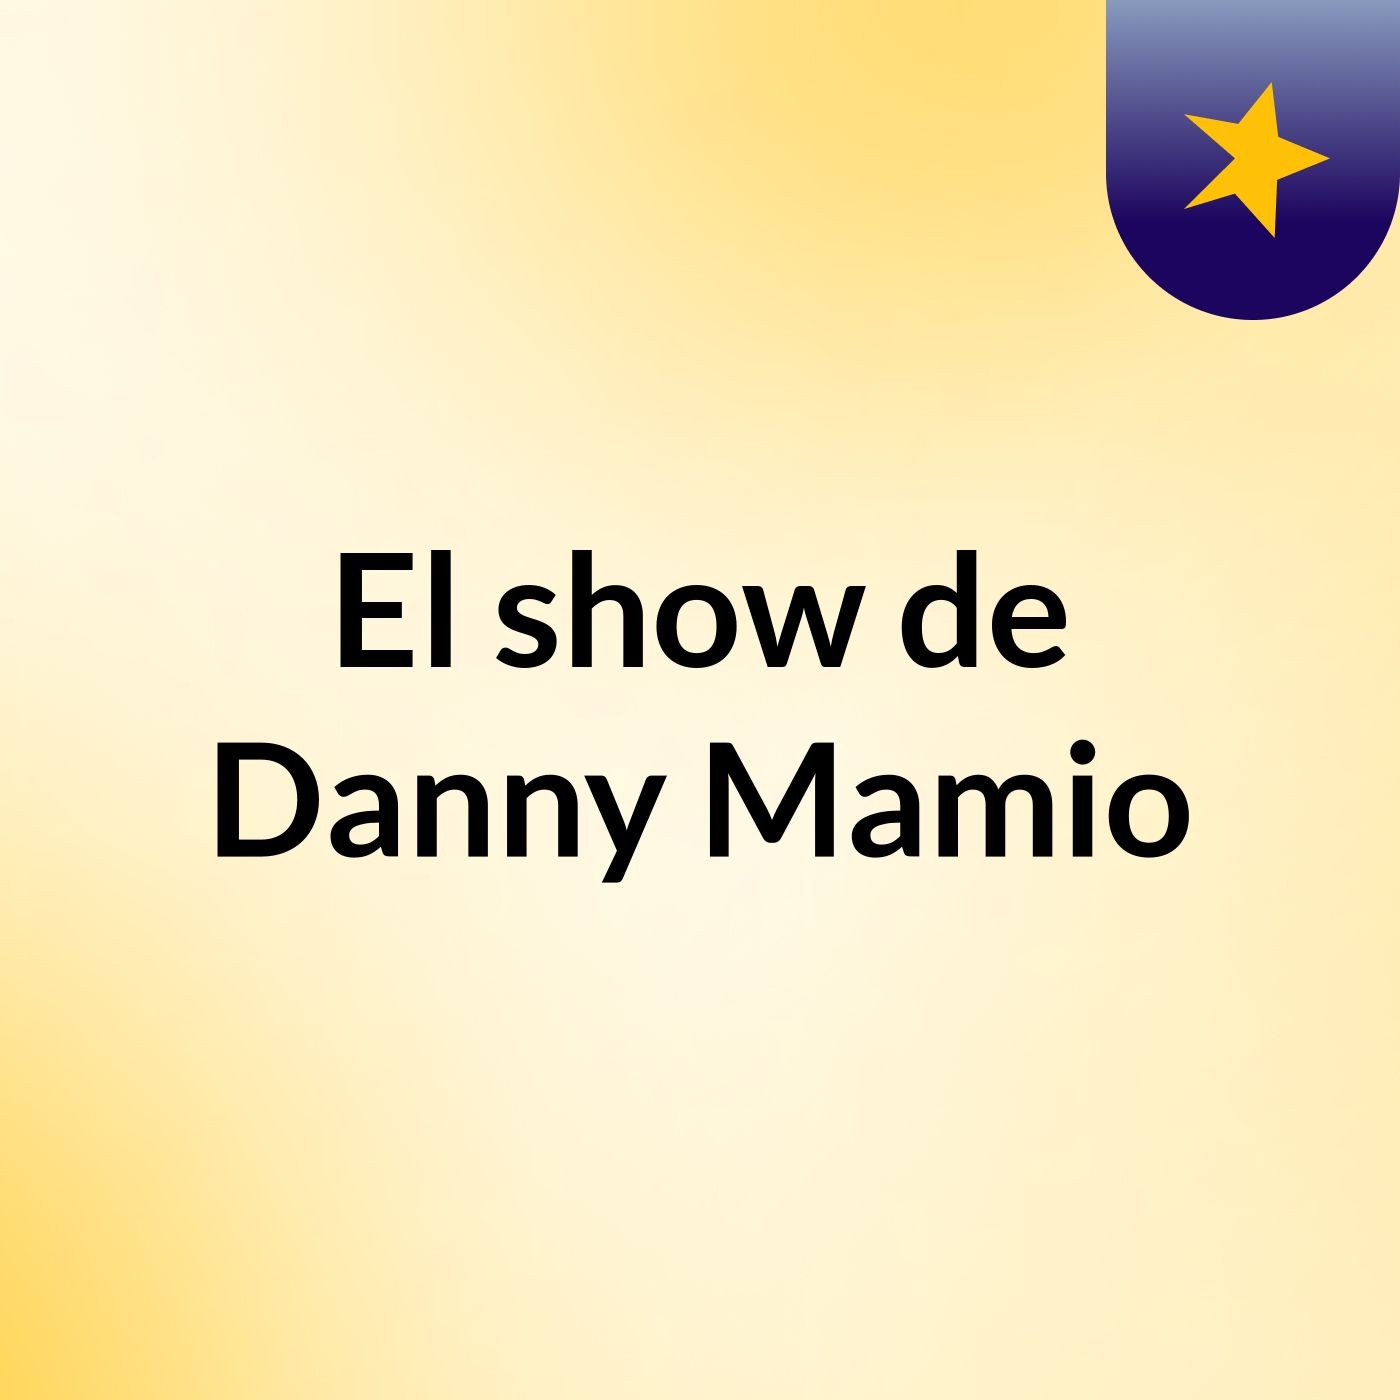 El show de Danny Mamio